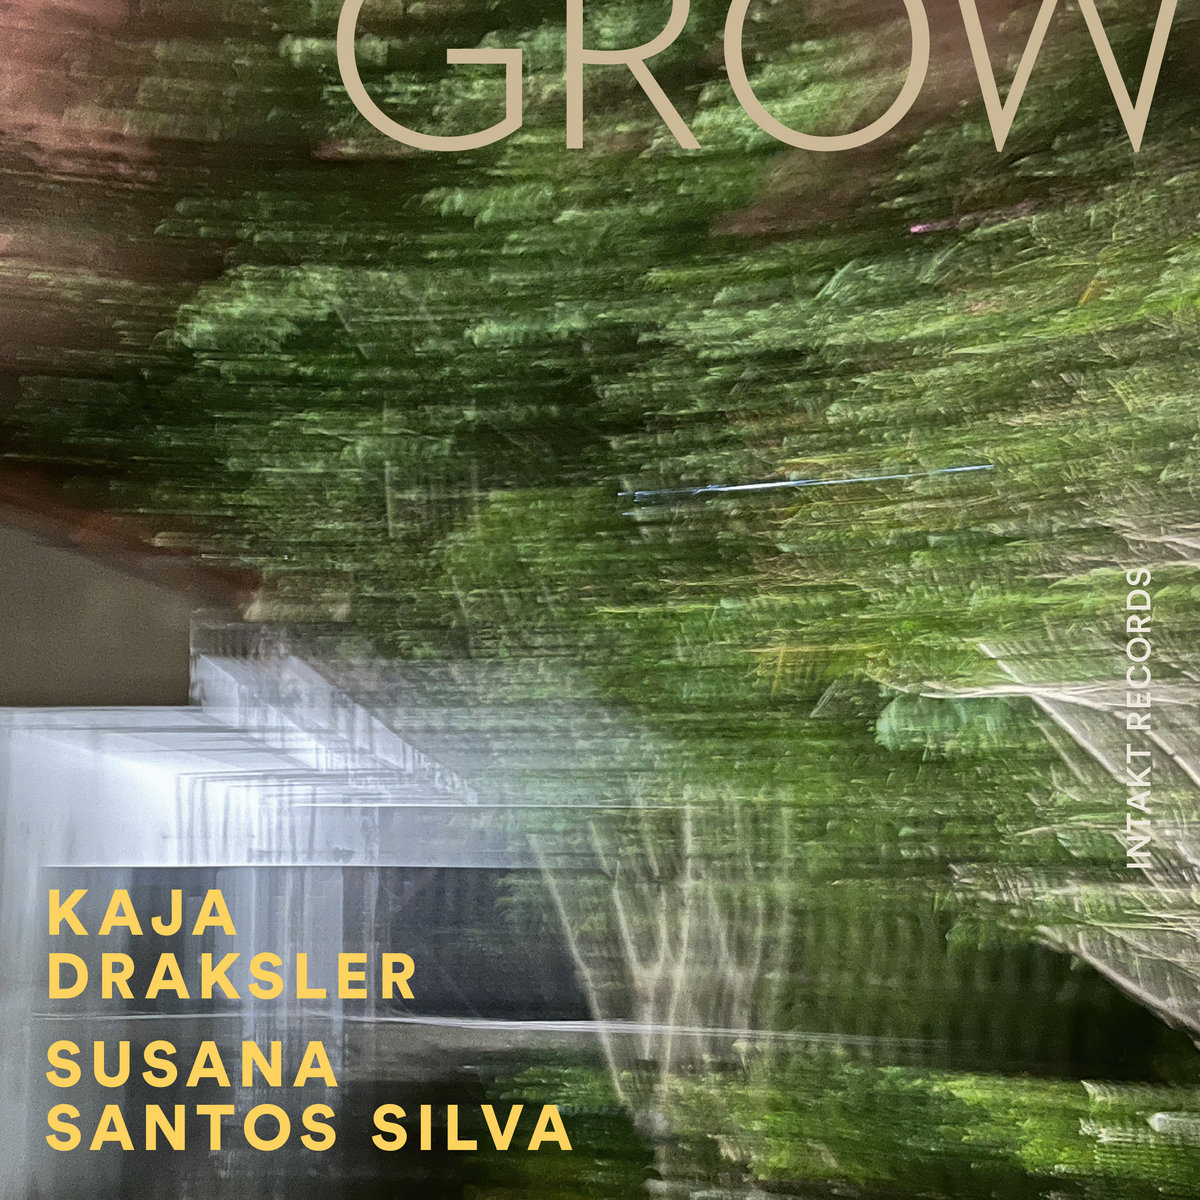 Kaja Draksler, Susana Santos Silva – Grow